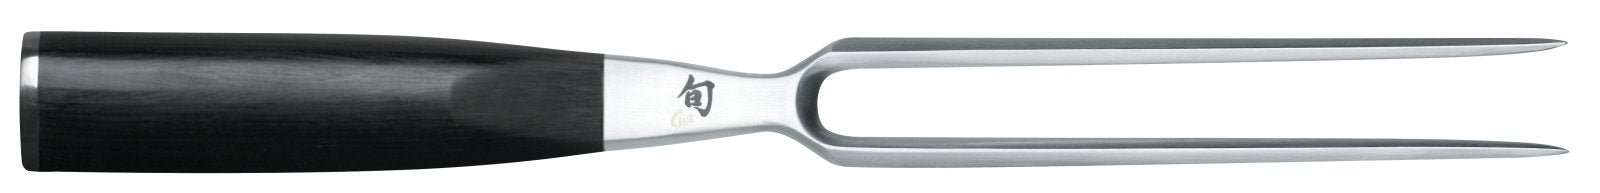 KAI Shun 16.5cm Carving Fork - KAI-DM-0709 - The Cotswold Knife Company